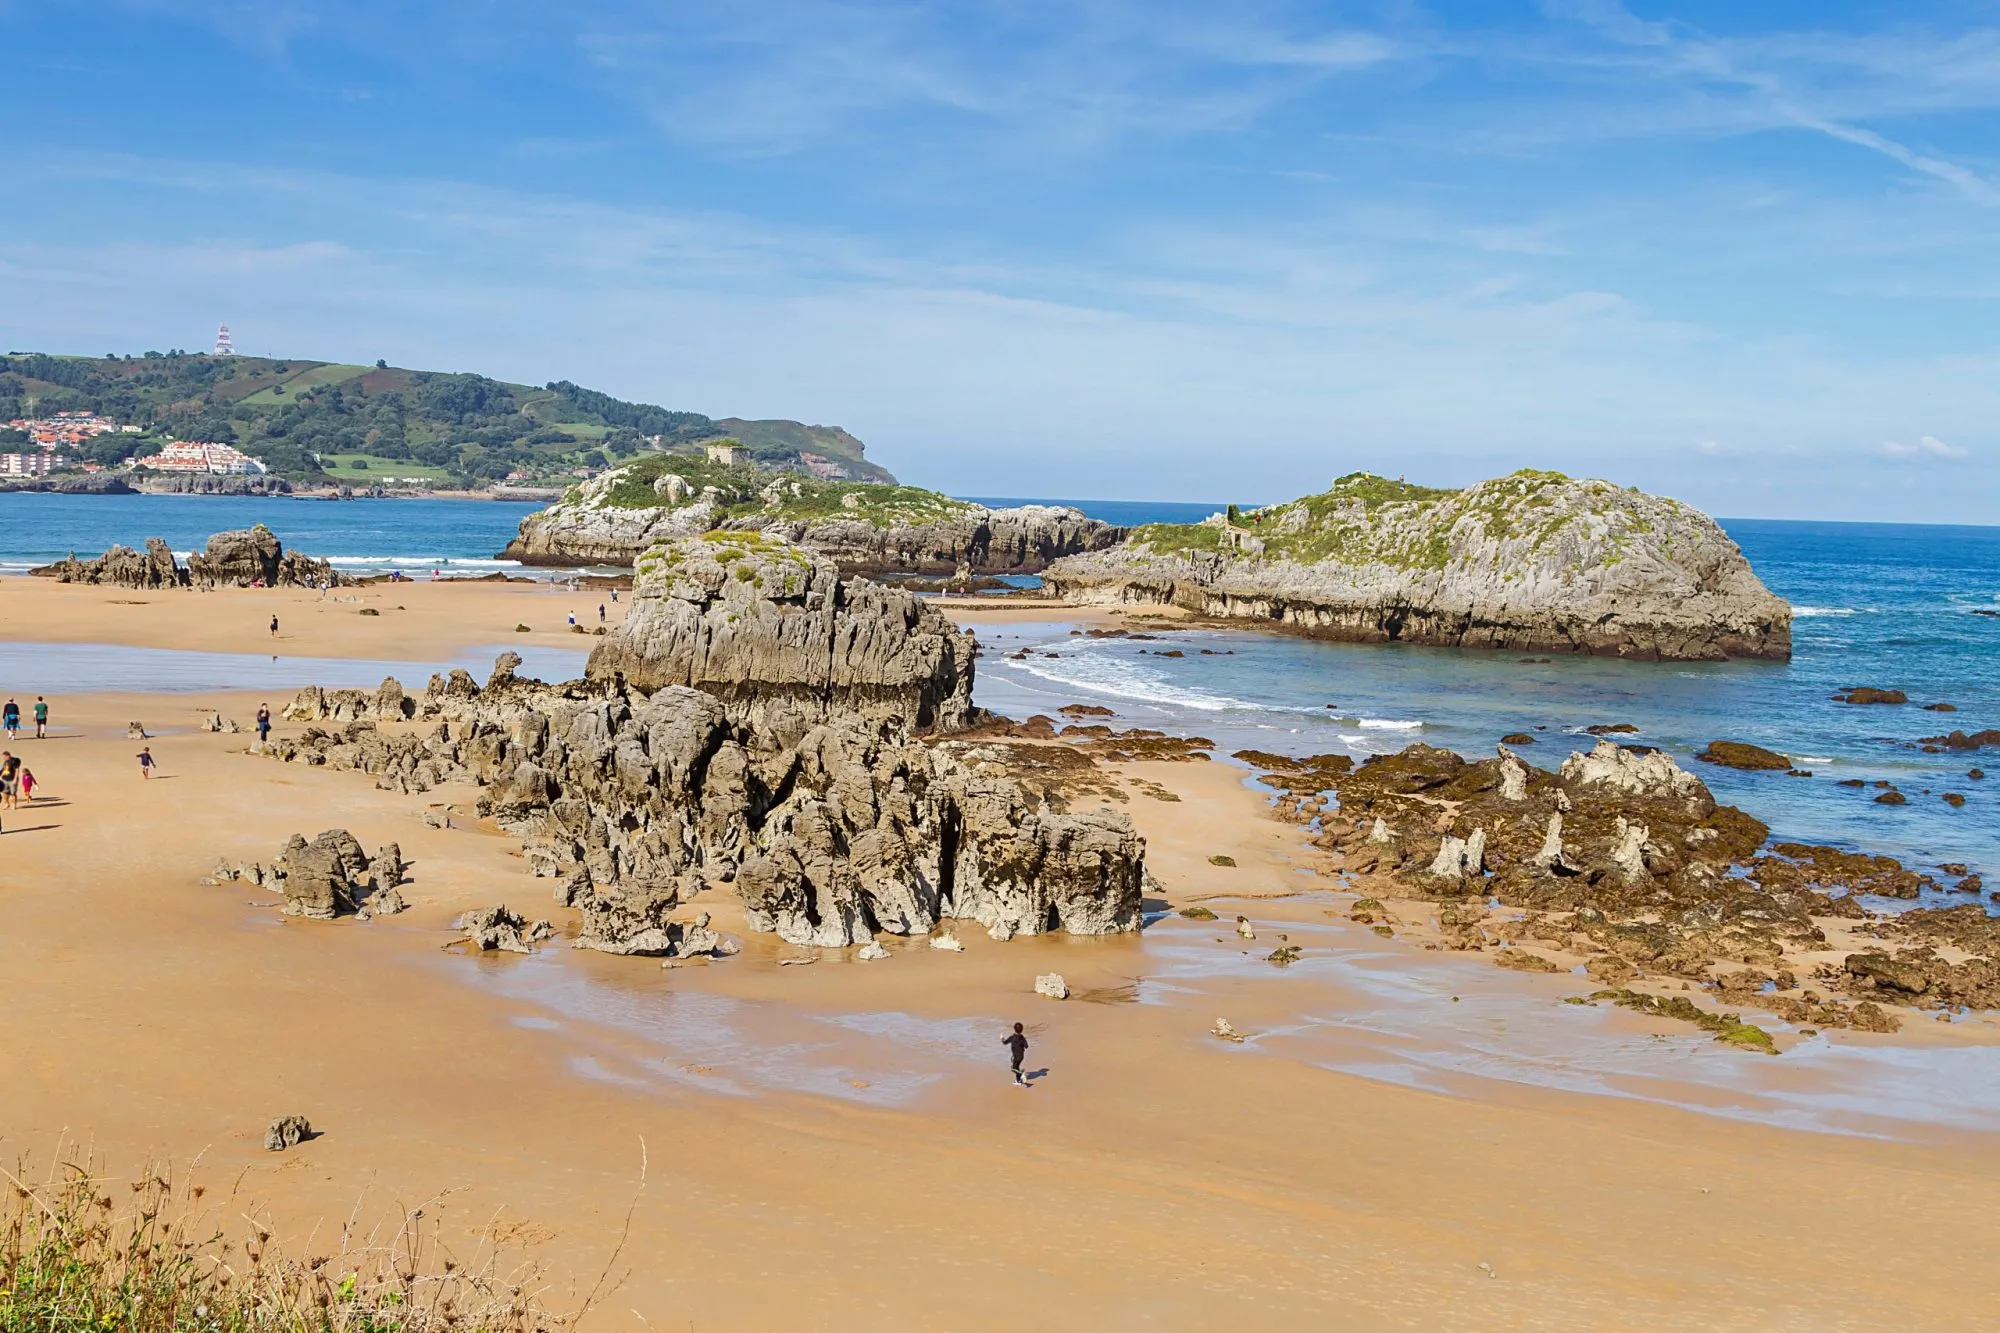 Wild coastal landscape in Noja town, Spain